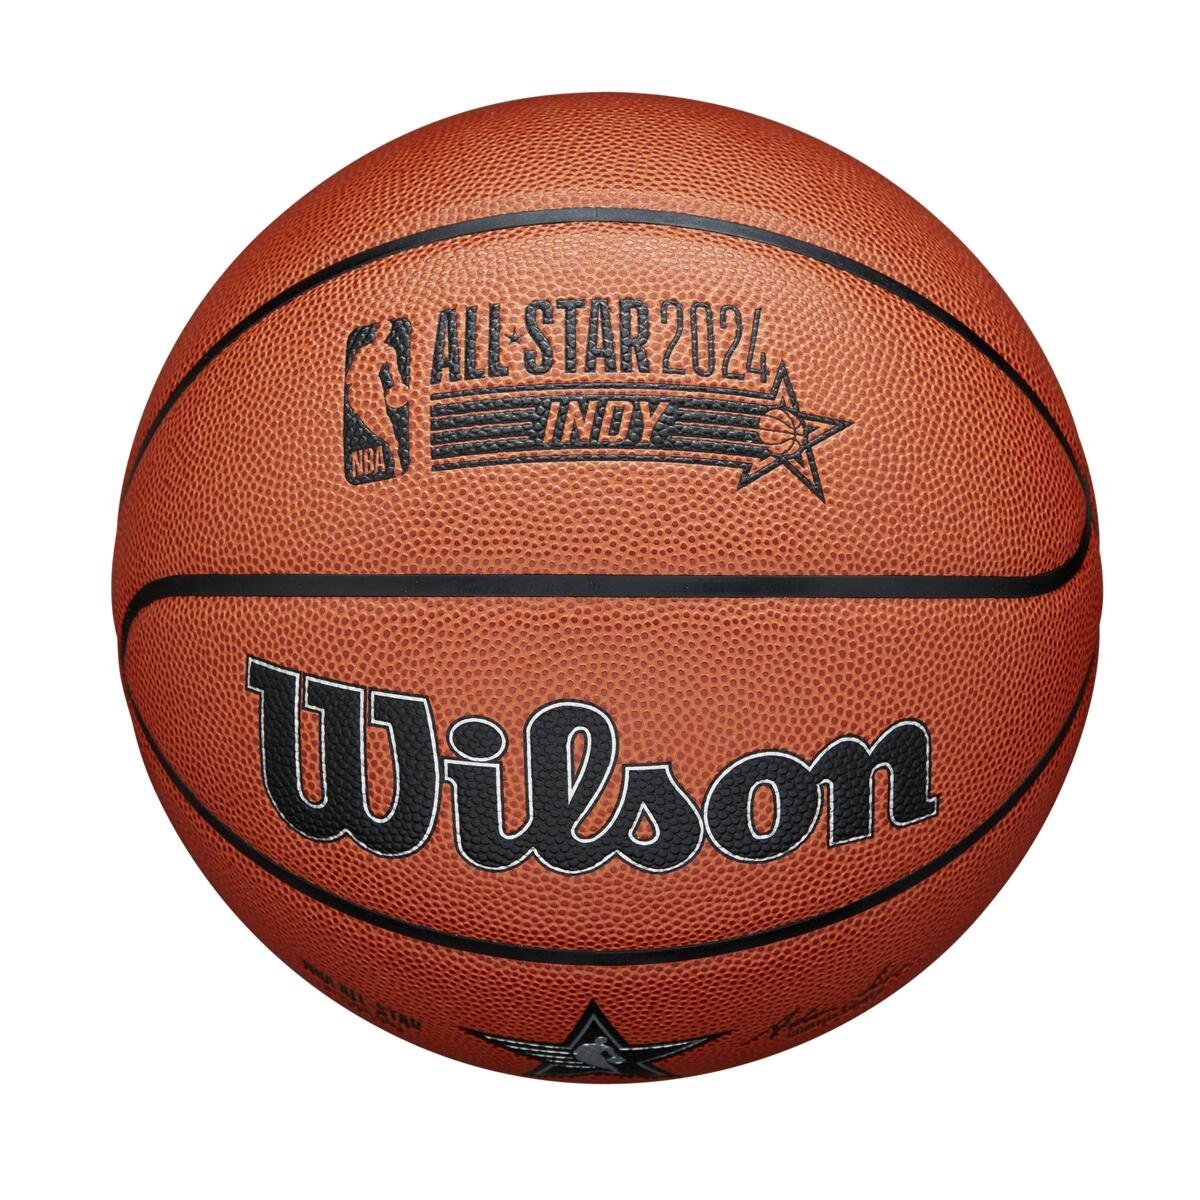 Lopta Wilson NBA All Star Replica Bskt - hnedá